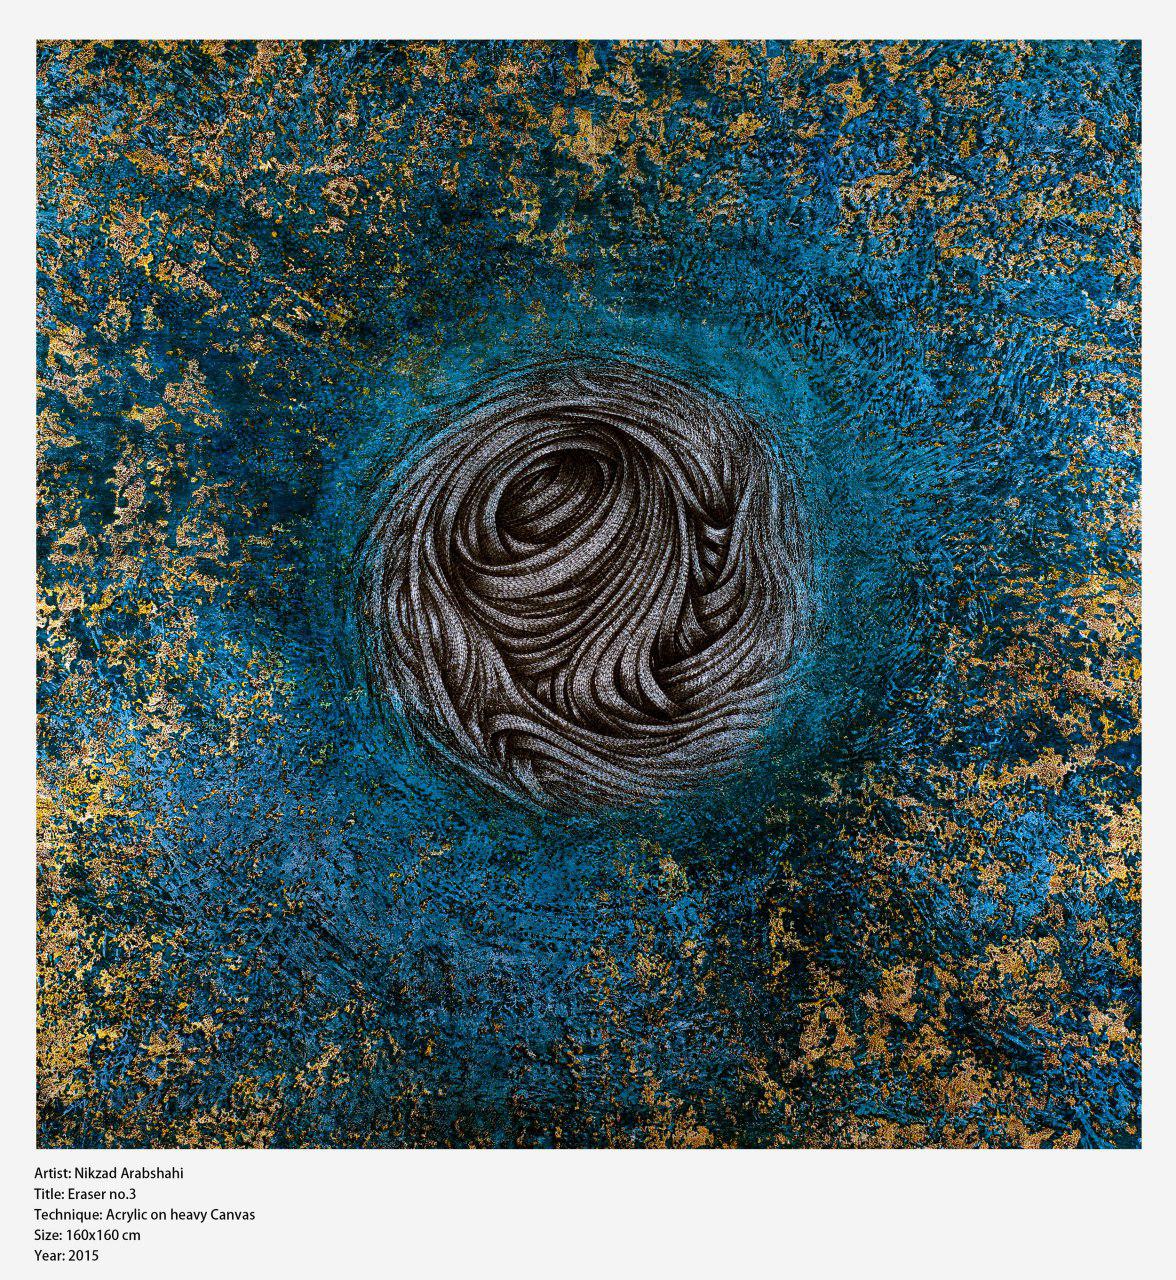 اثر نیکزاد عربشاهی در نمایشگاه بازخوانی پیرامون، گالری مژده